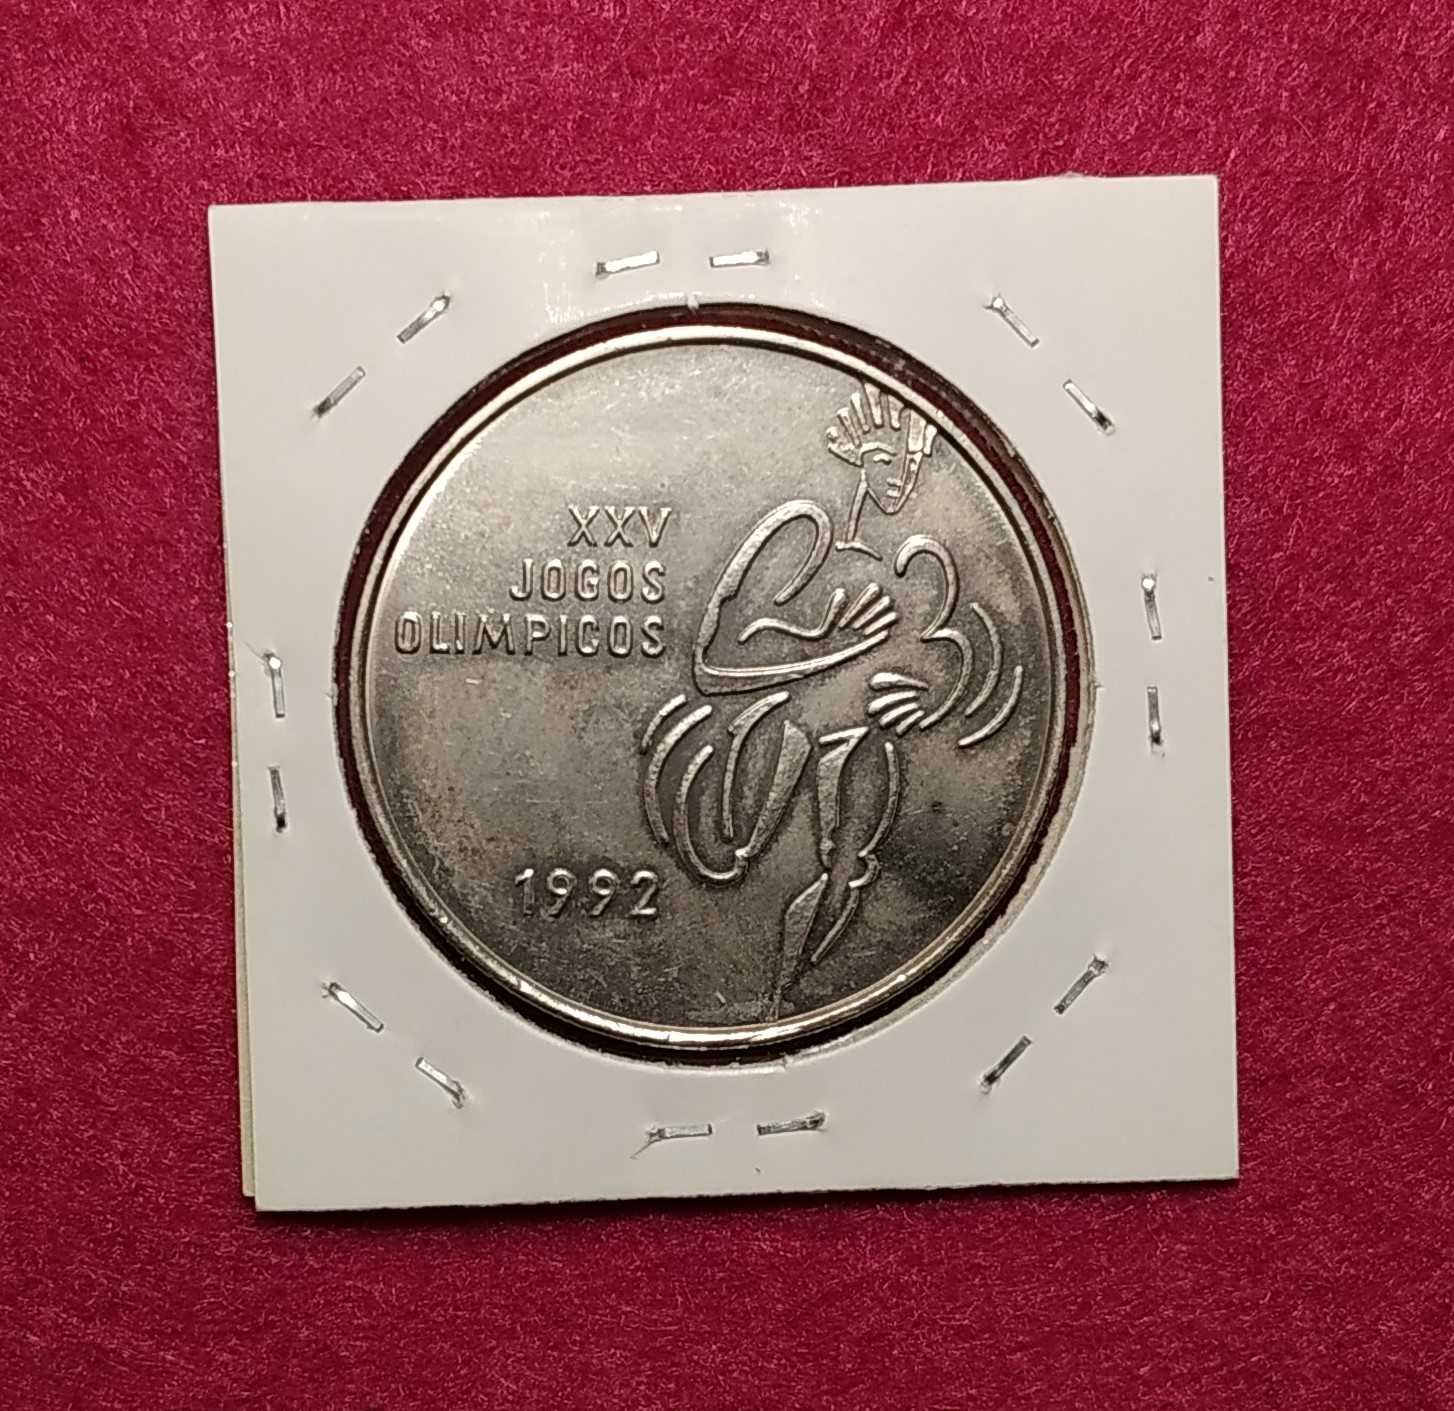 Portugal - moeda comemorativa de 200 escudos de 1992